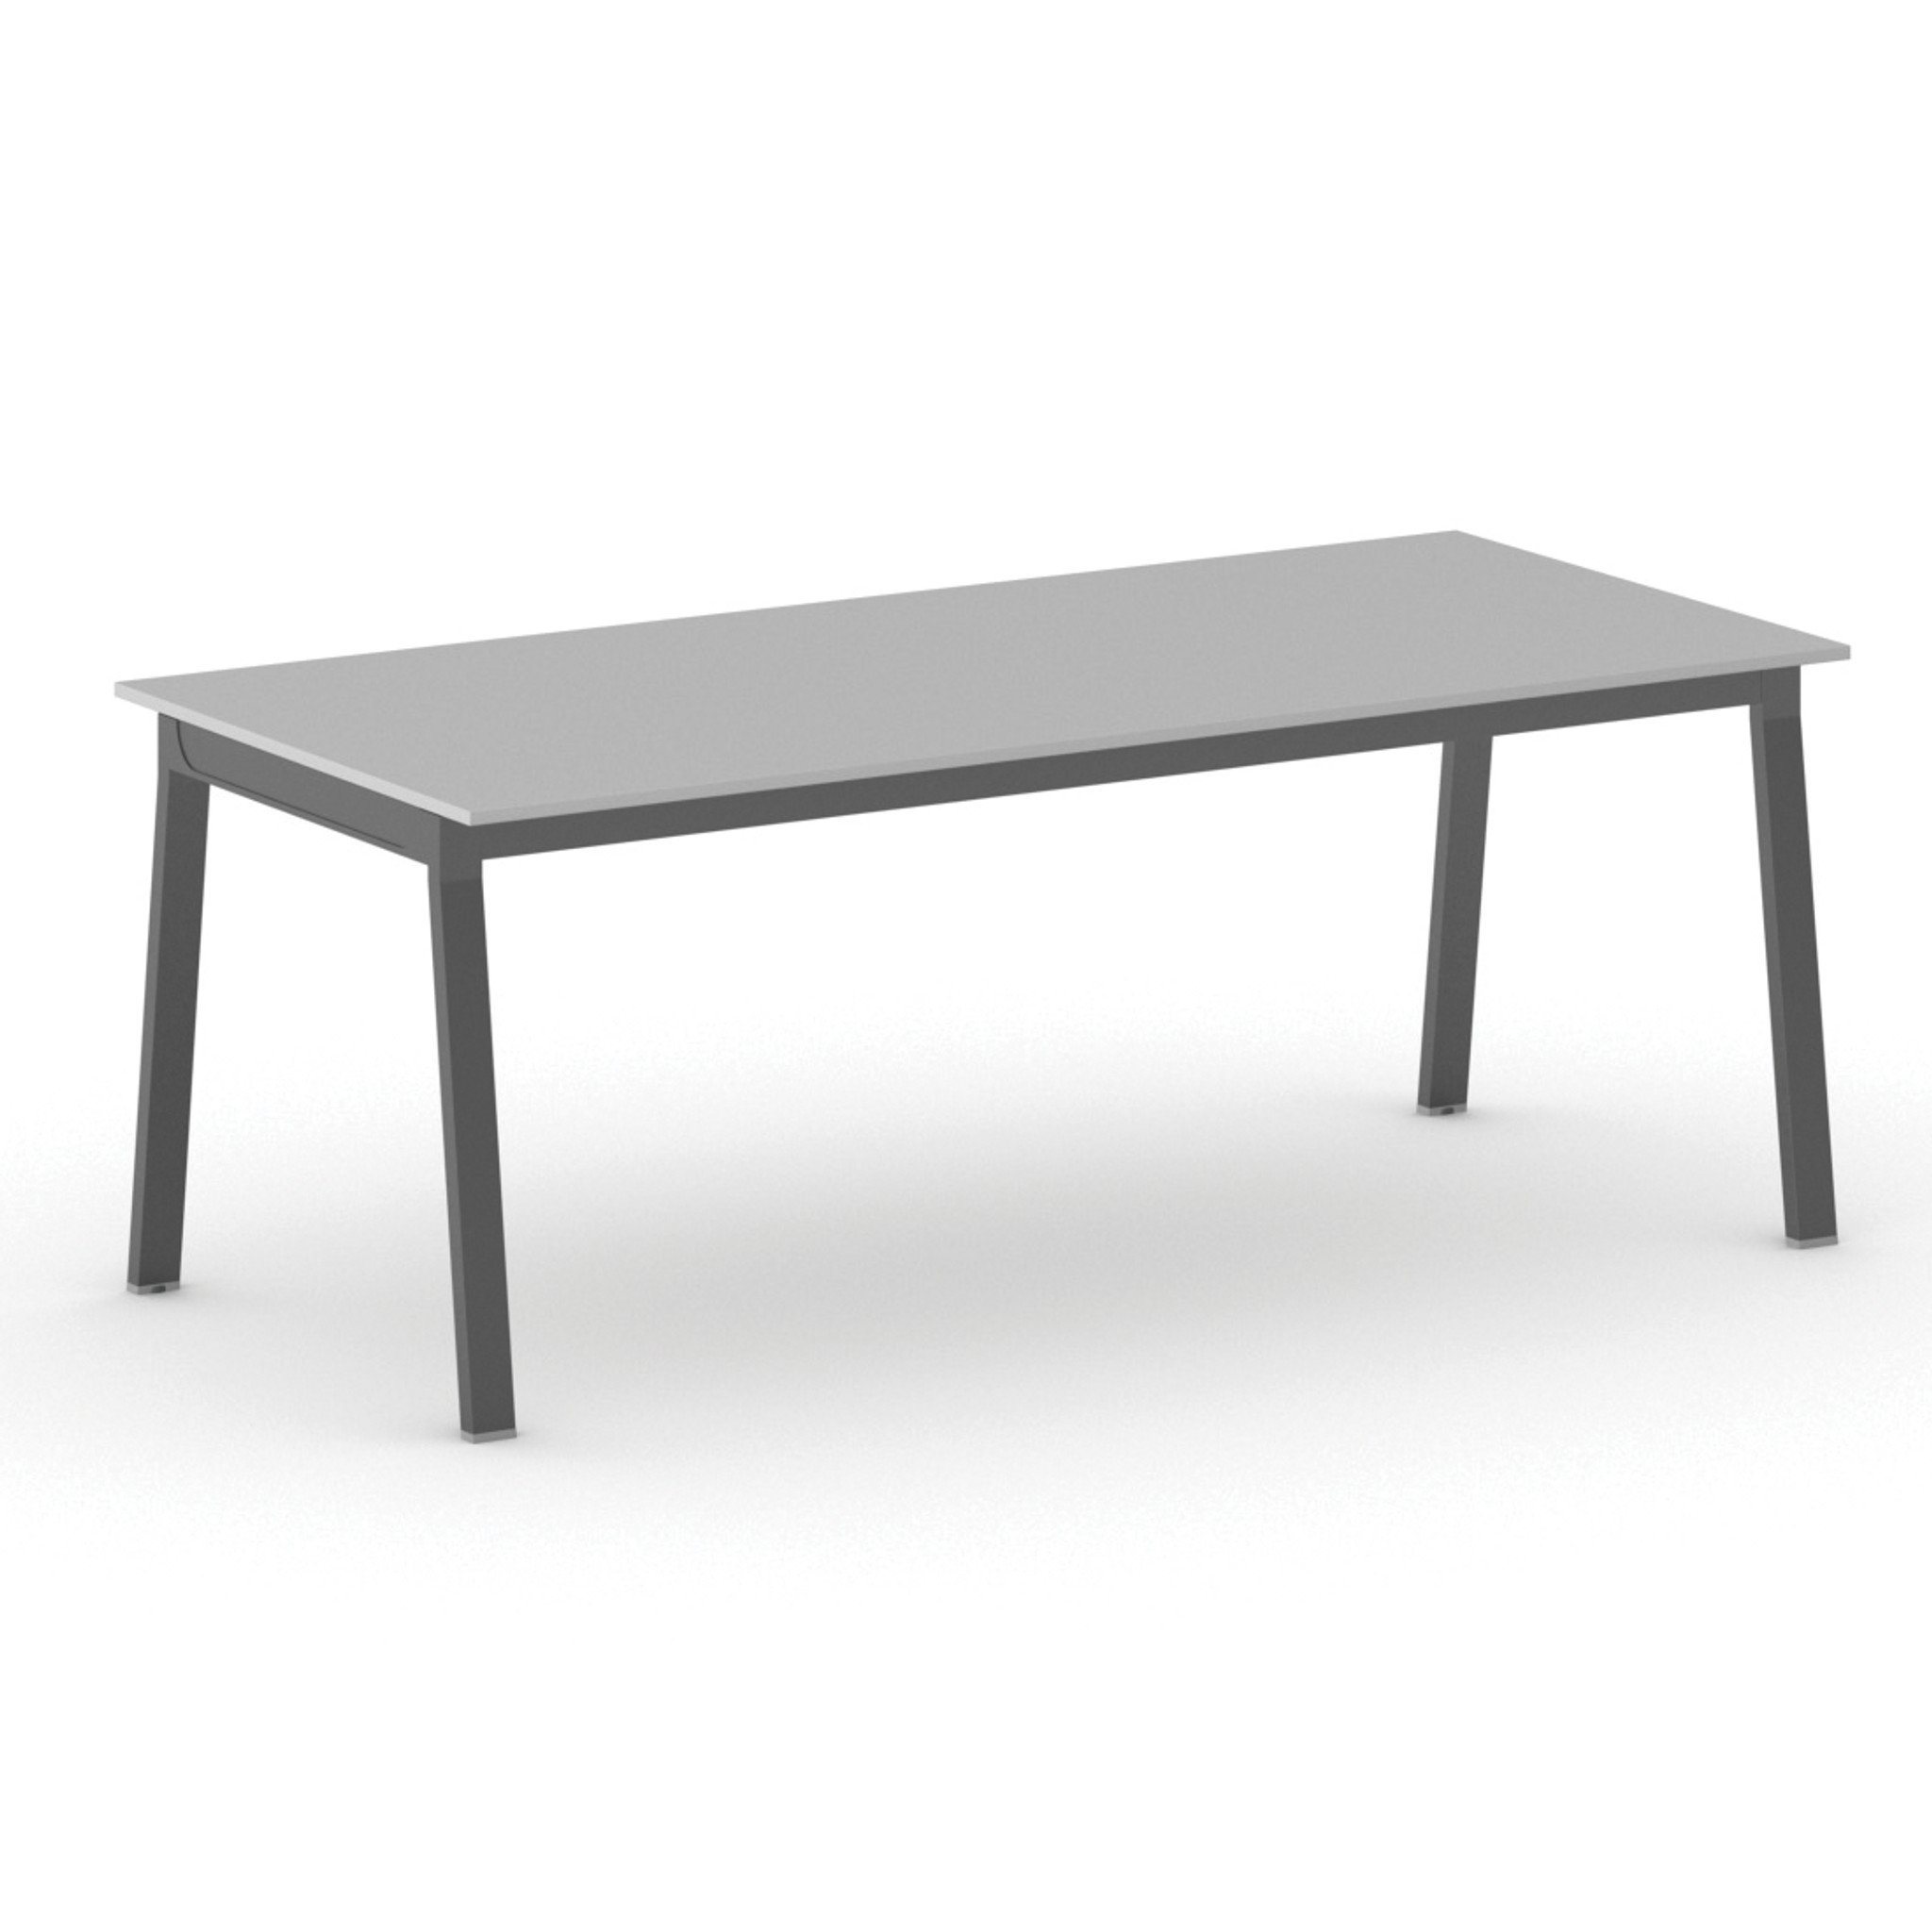 Stół PRIMO BASIC z czarnym stelażem, 2000 x 900 x 750 mm, szary